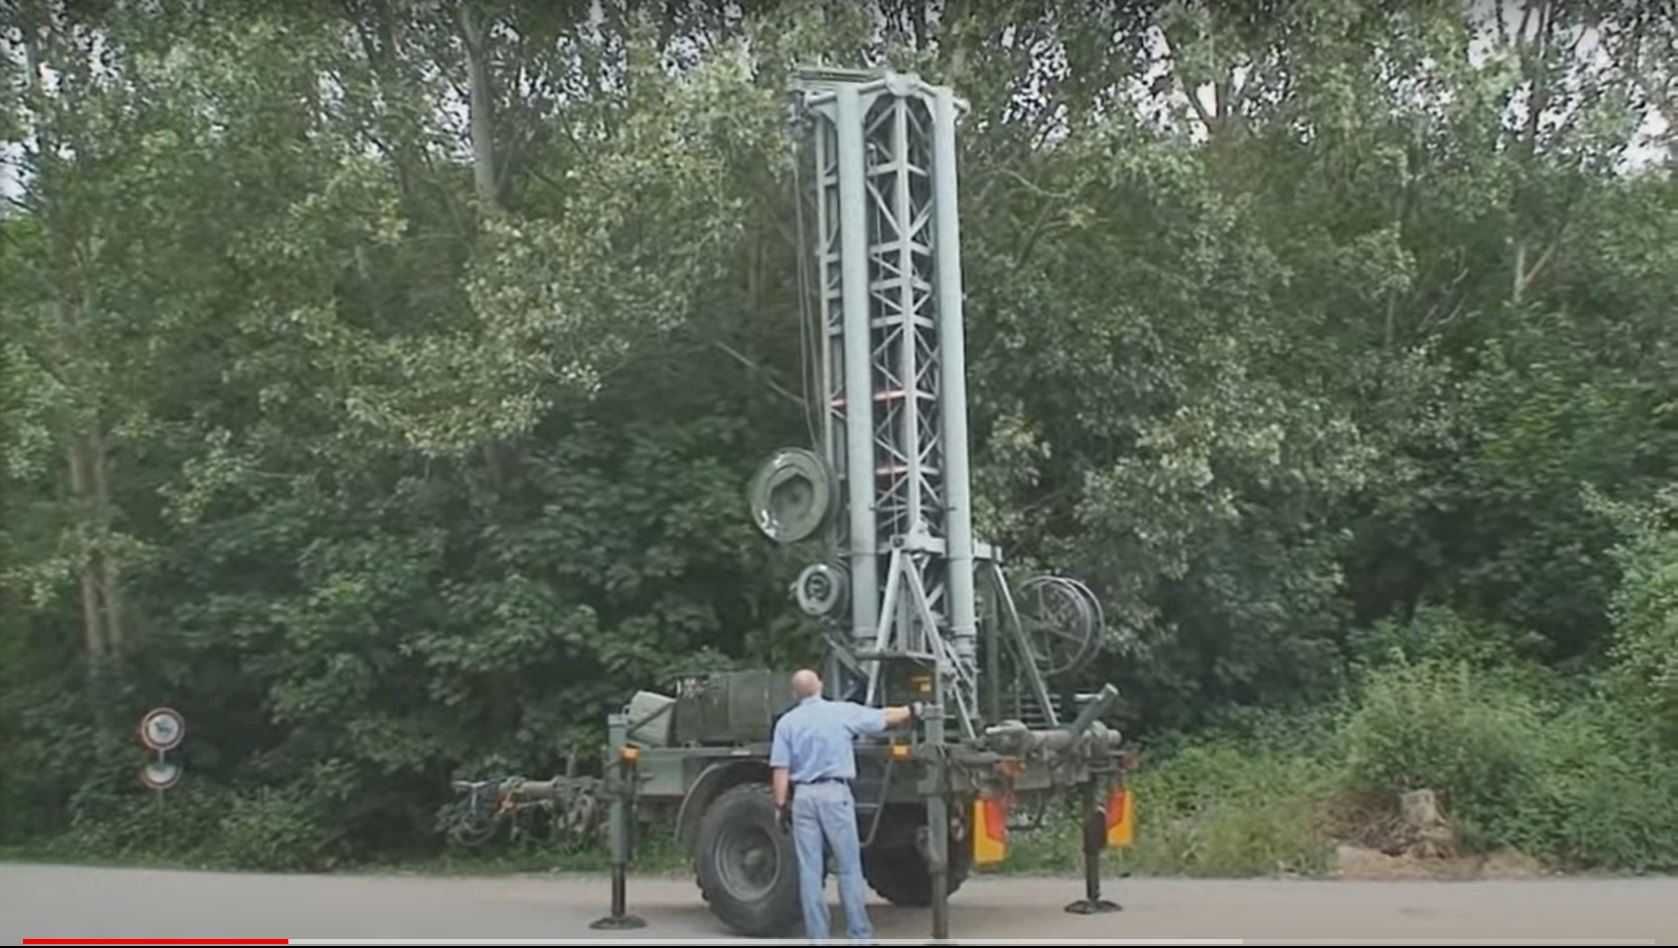 Wojskowa wieża mobilna / wojskowy maszt antenowy 25m